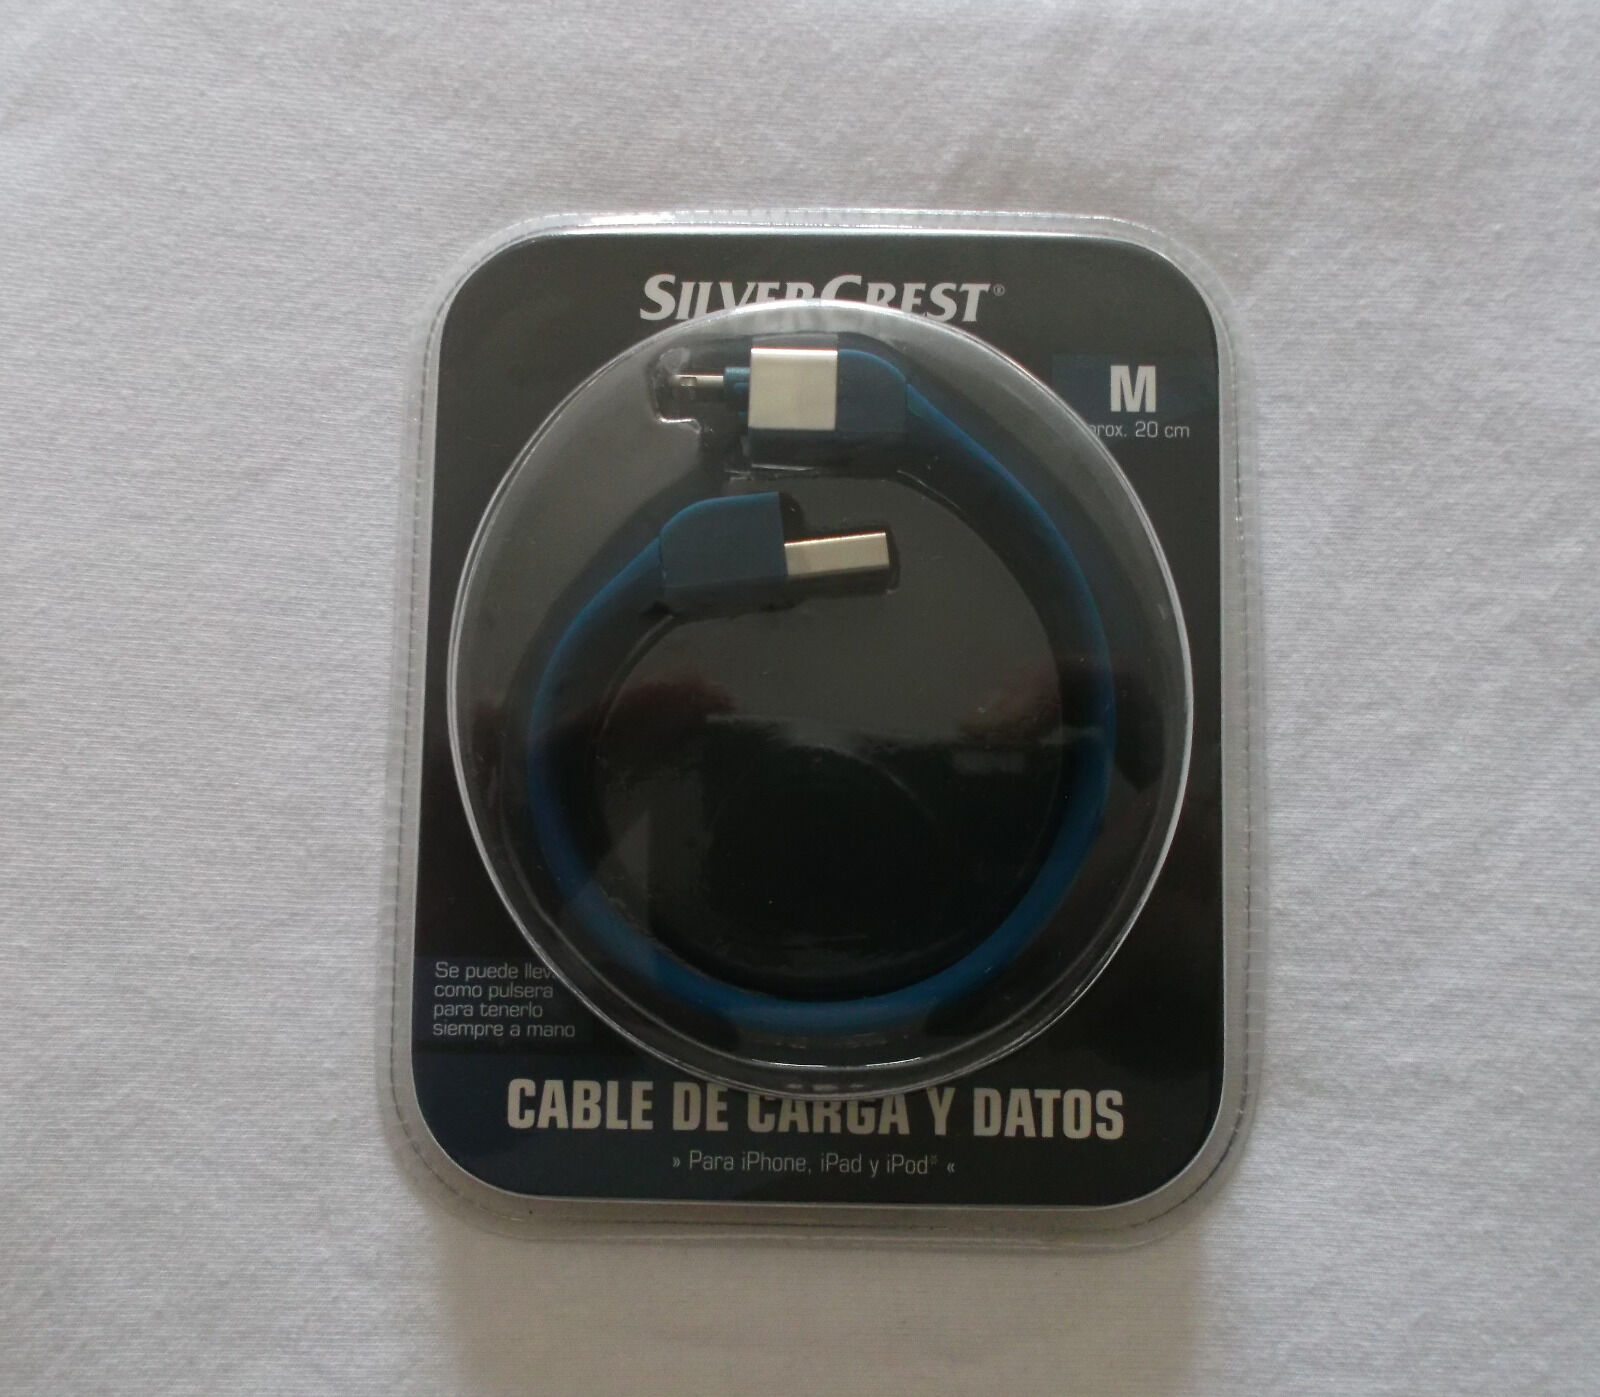 Cable de carga y datos para iPhone, iPad y iPod, Silvercrest (azul)